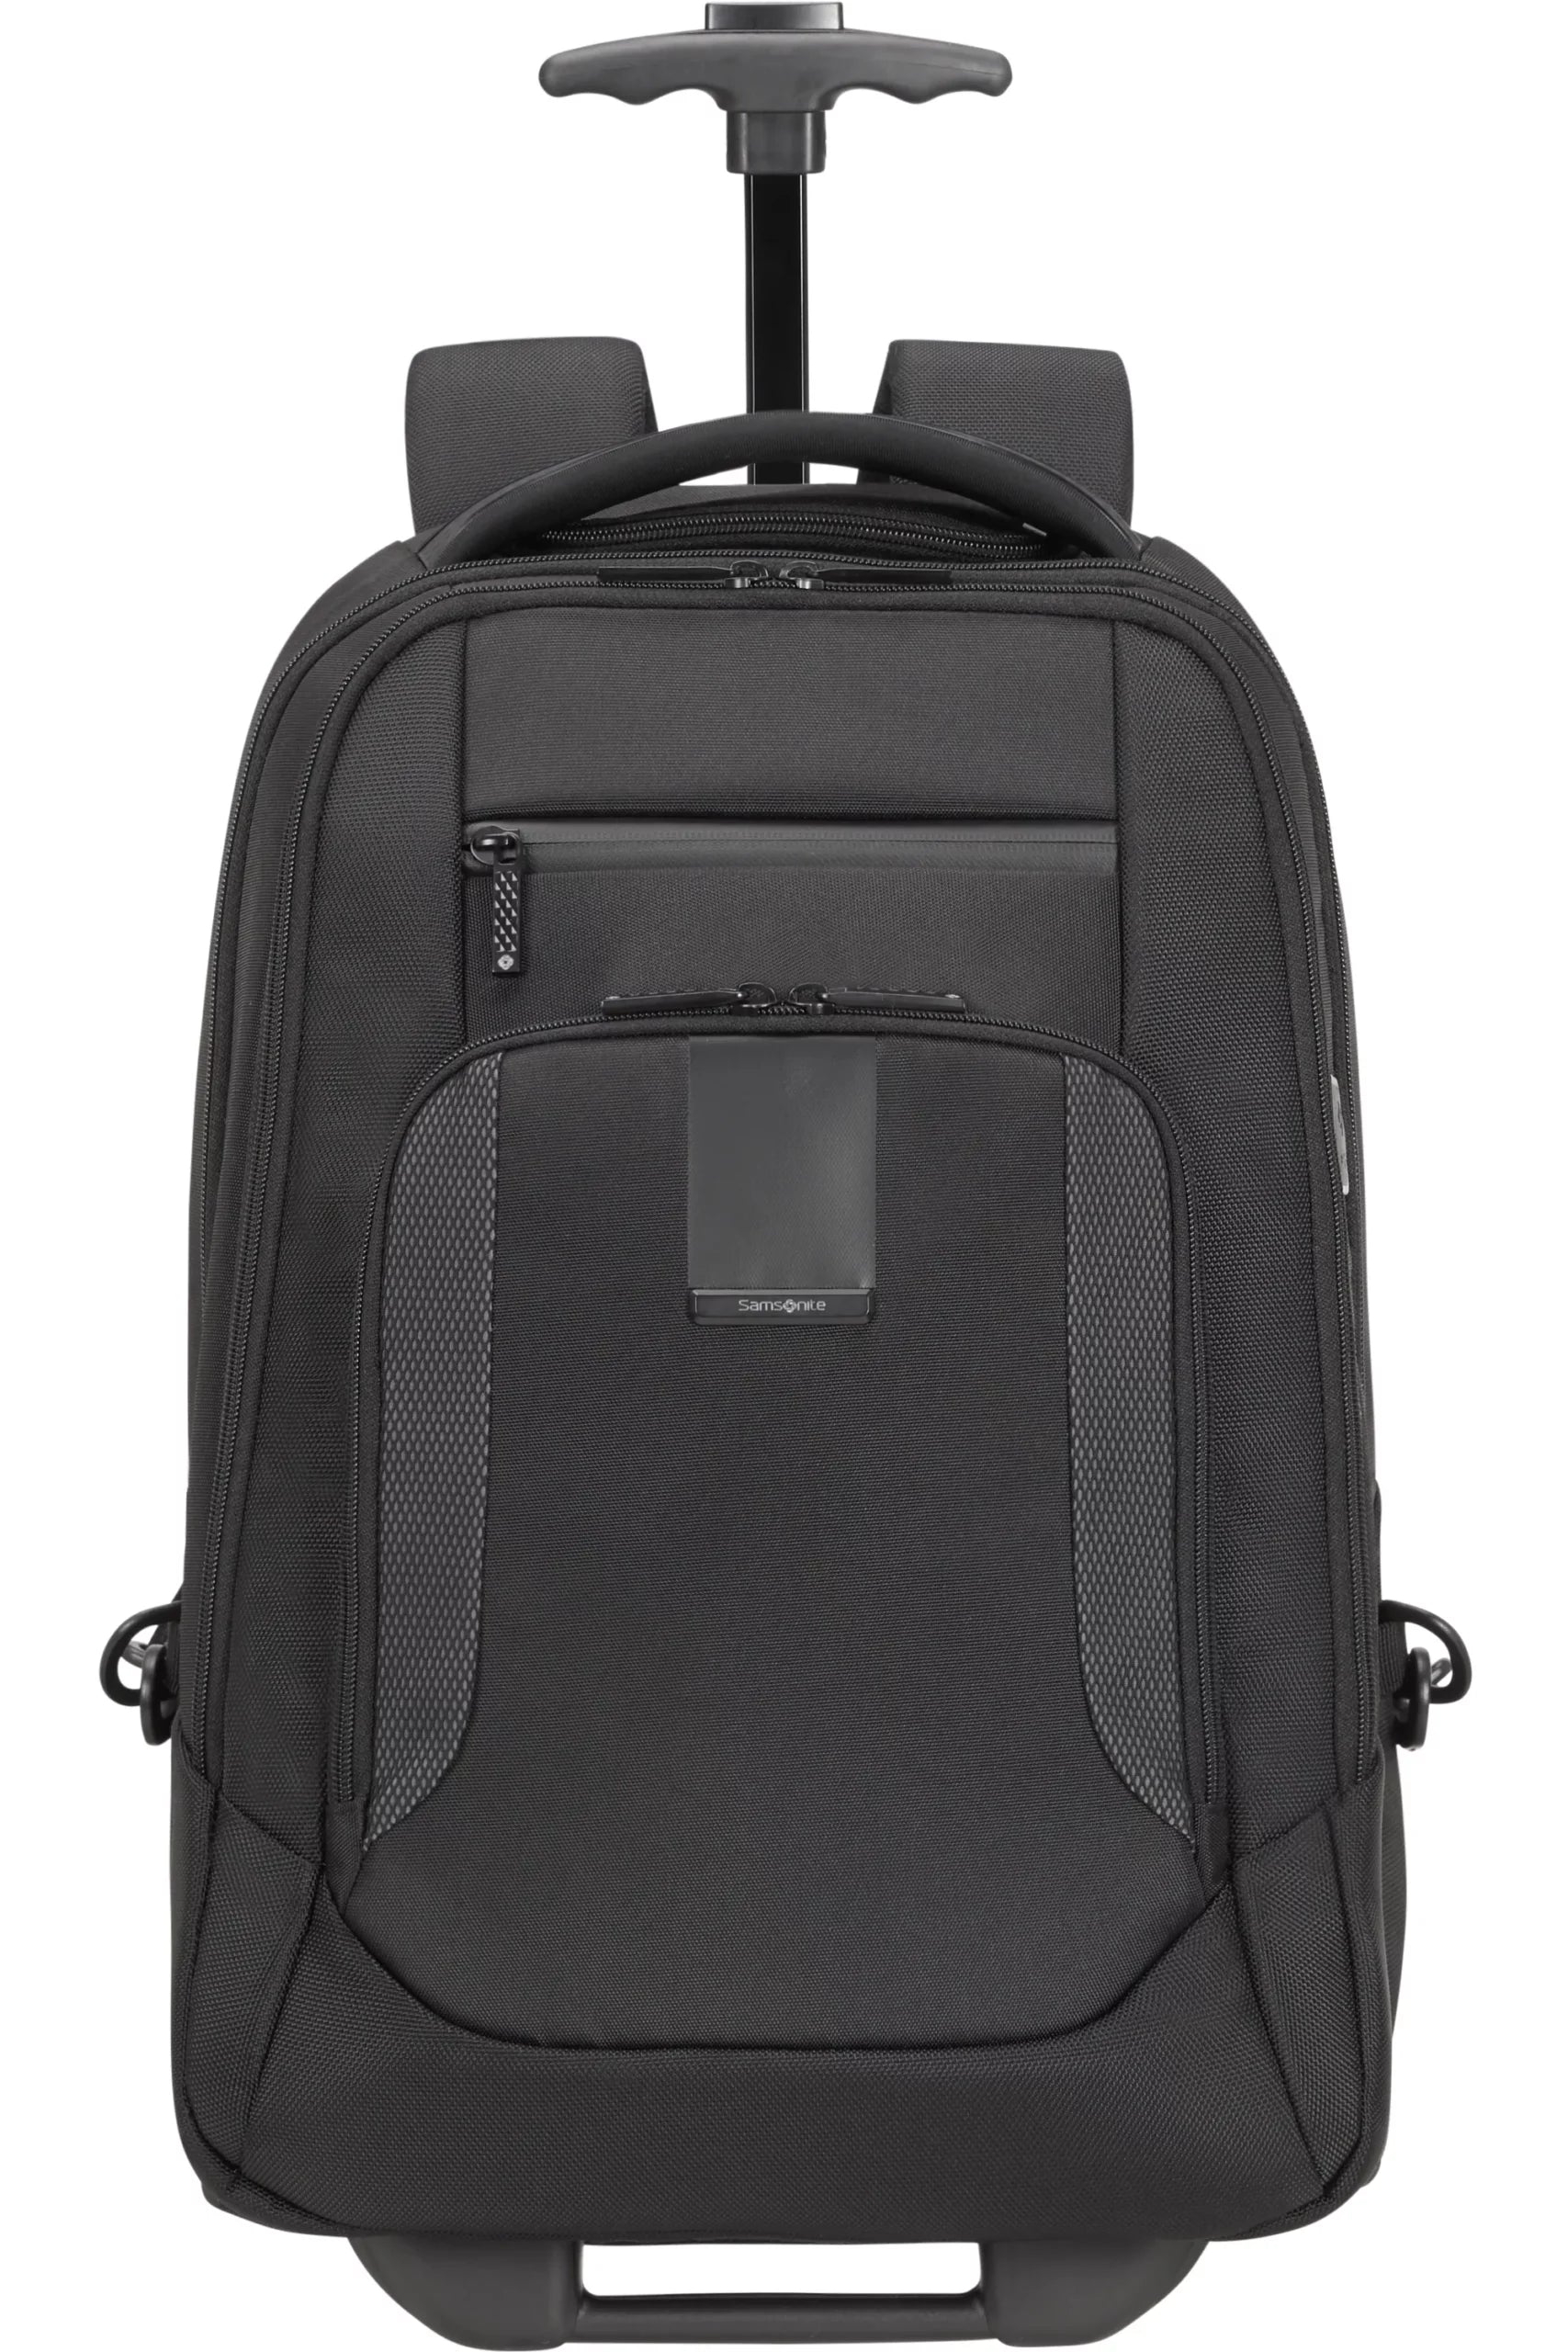 Samsonite Midtown Laptop M - Backpack Black